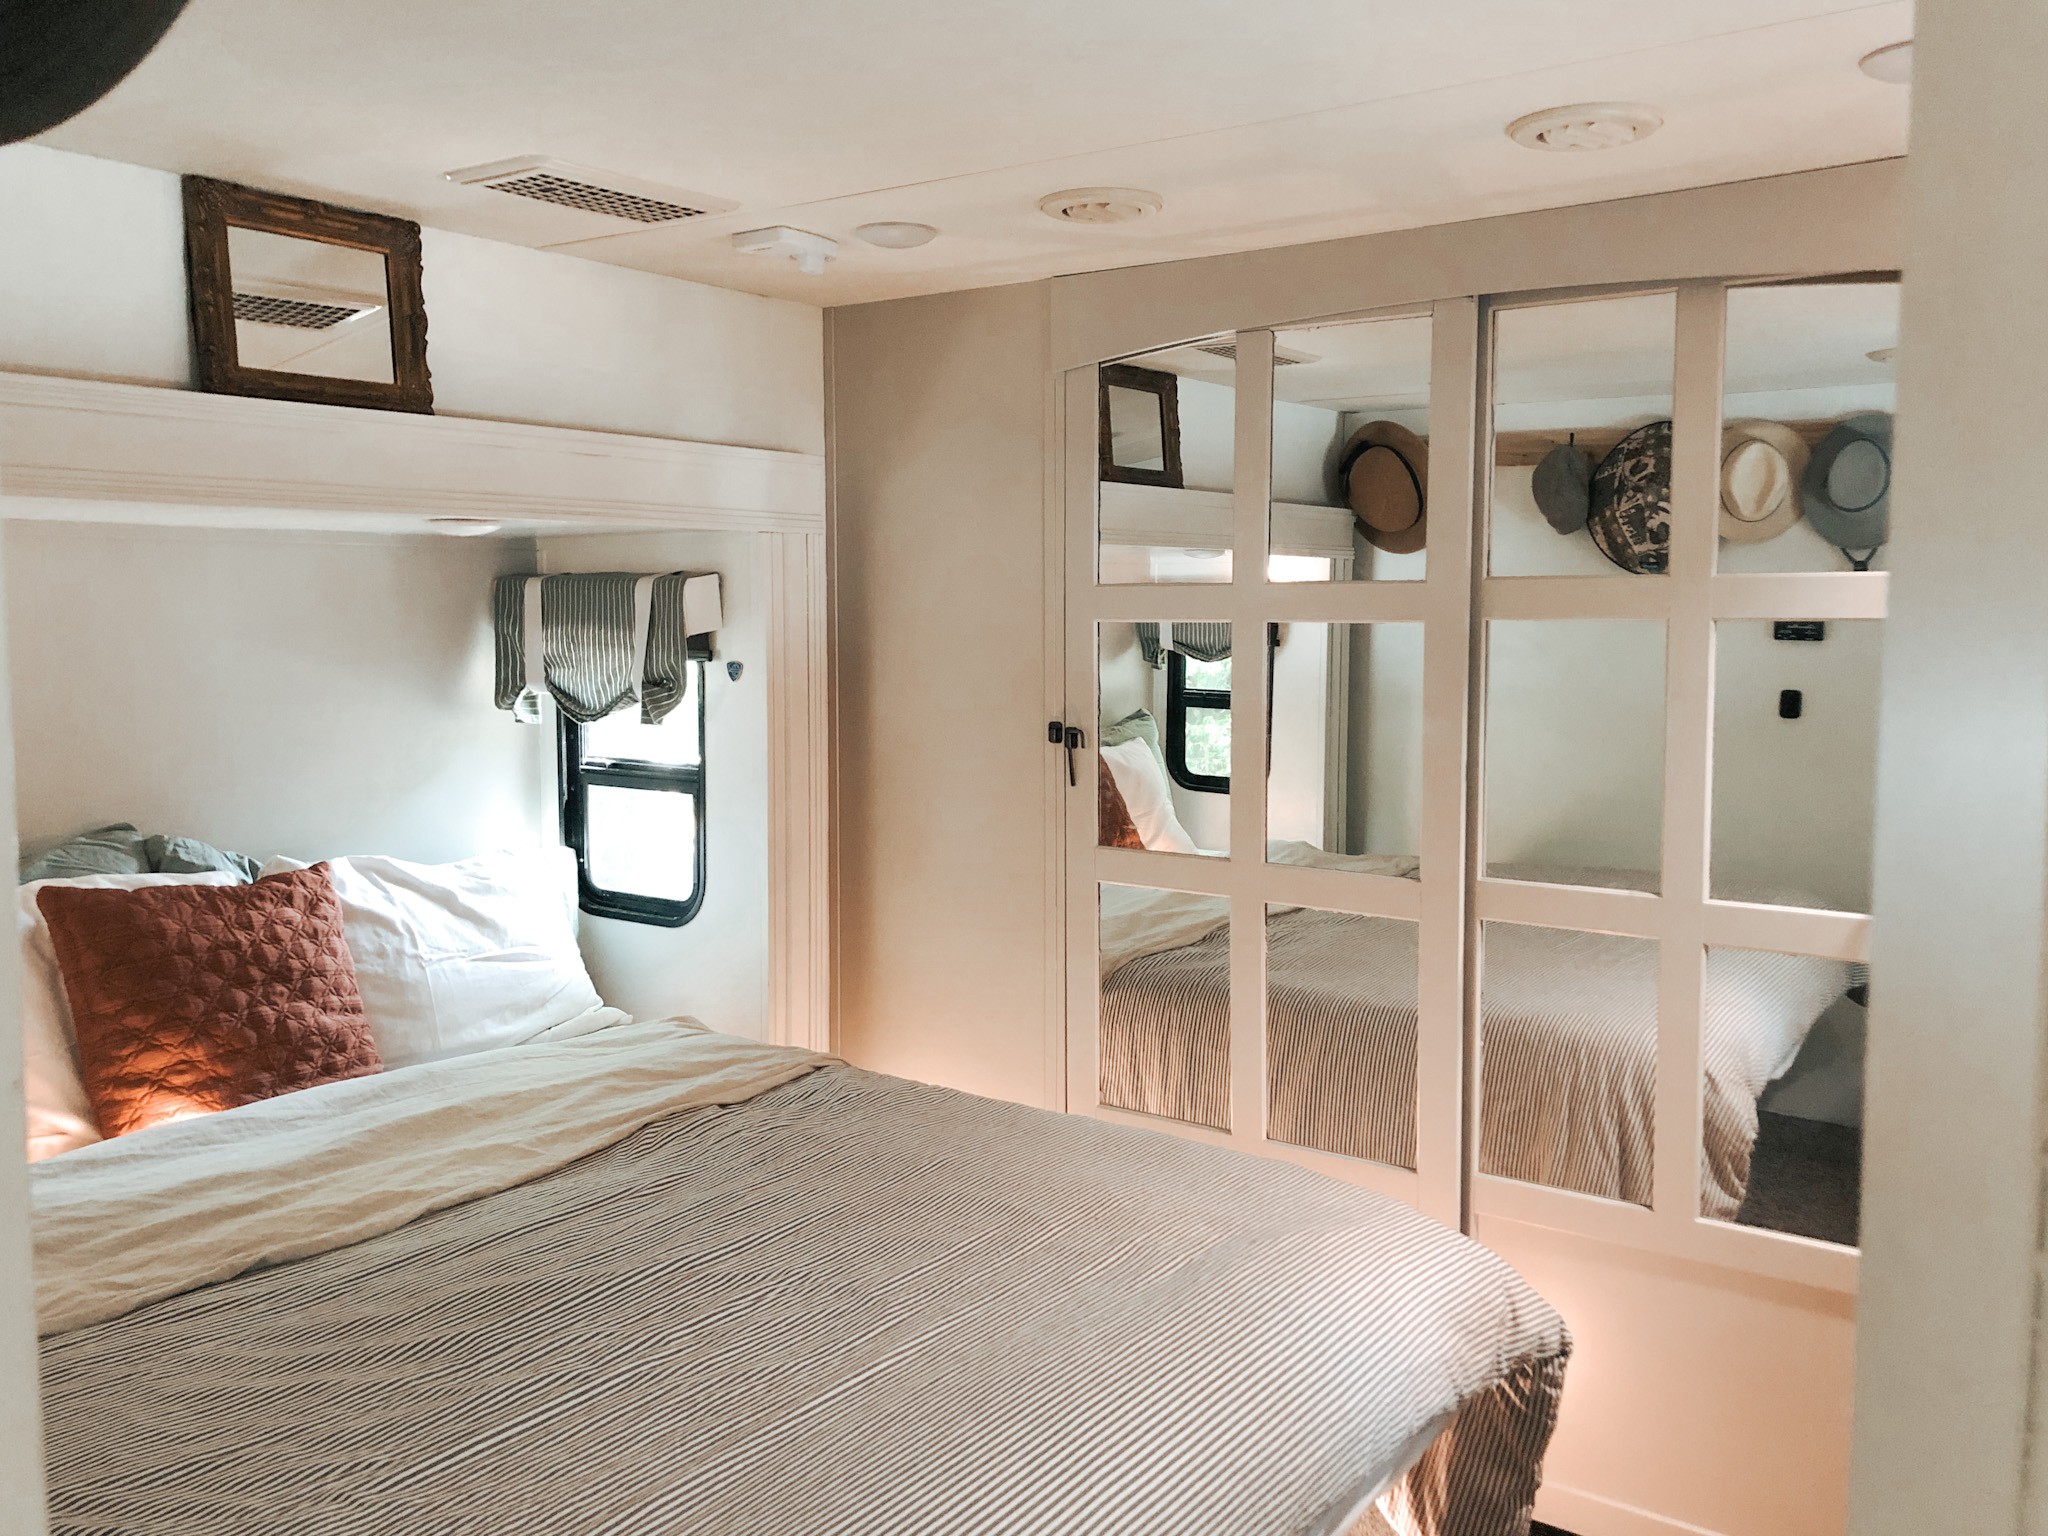 The master bedroom inside the JC & BÄRBEL BARRINGER family's 2018 KZ Durango Gold fifth wheel